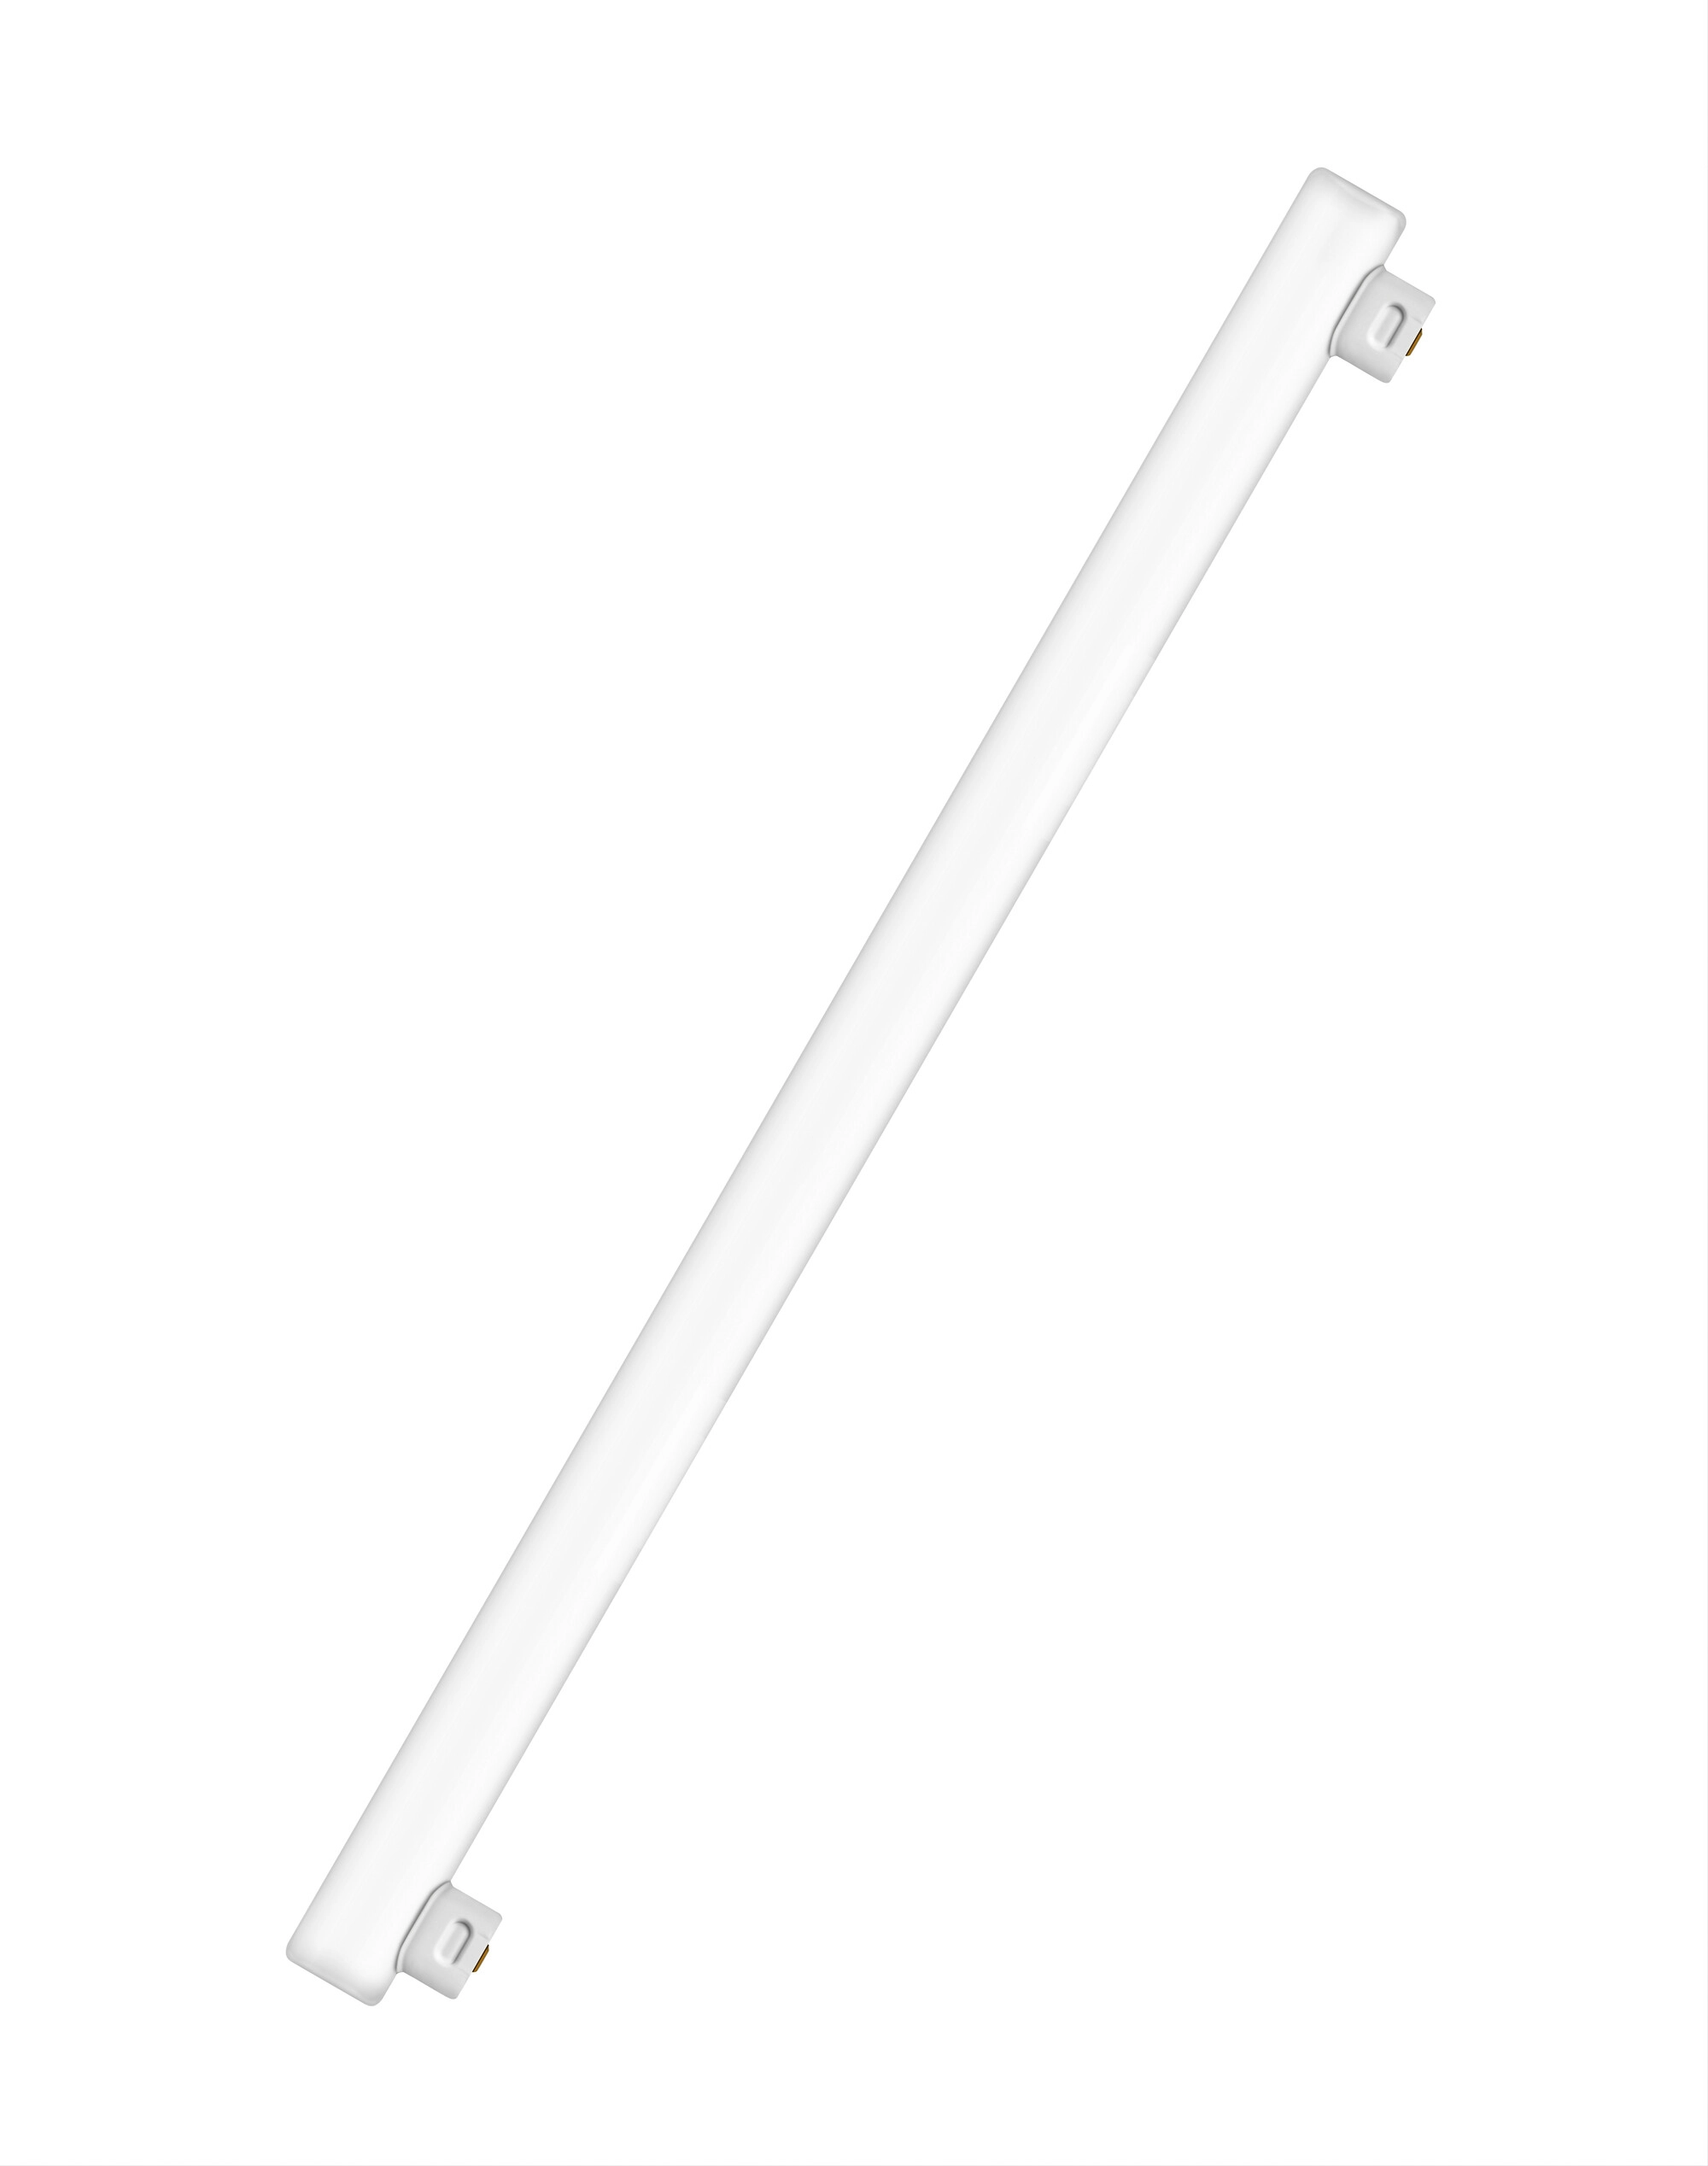 LUX Starter für Leuchtstoffröhren 4 W - 125 W kaufen bei OBI